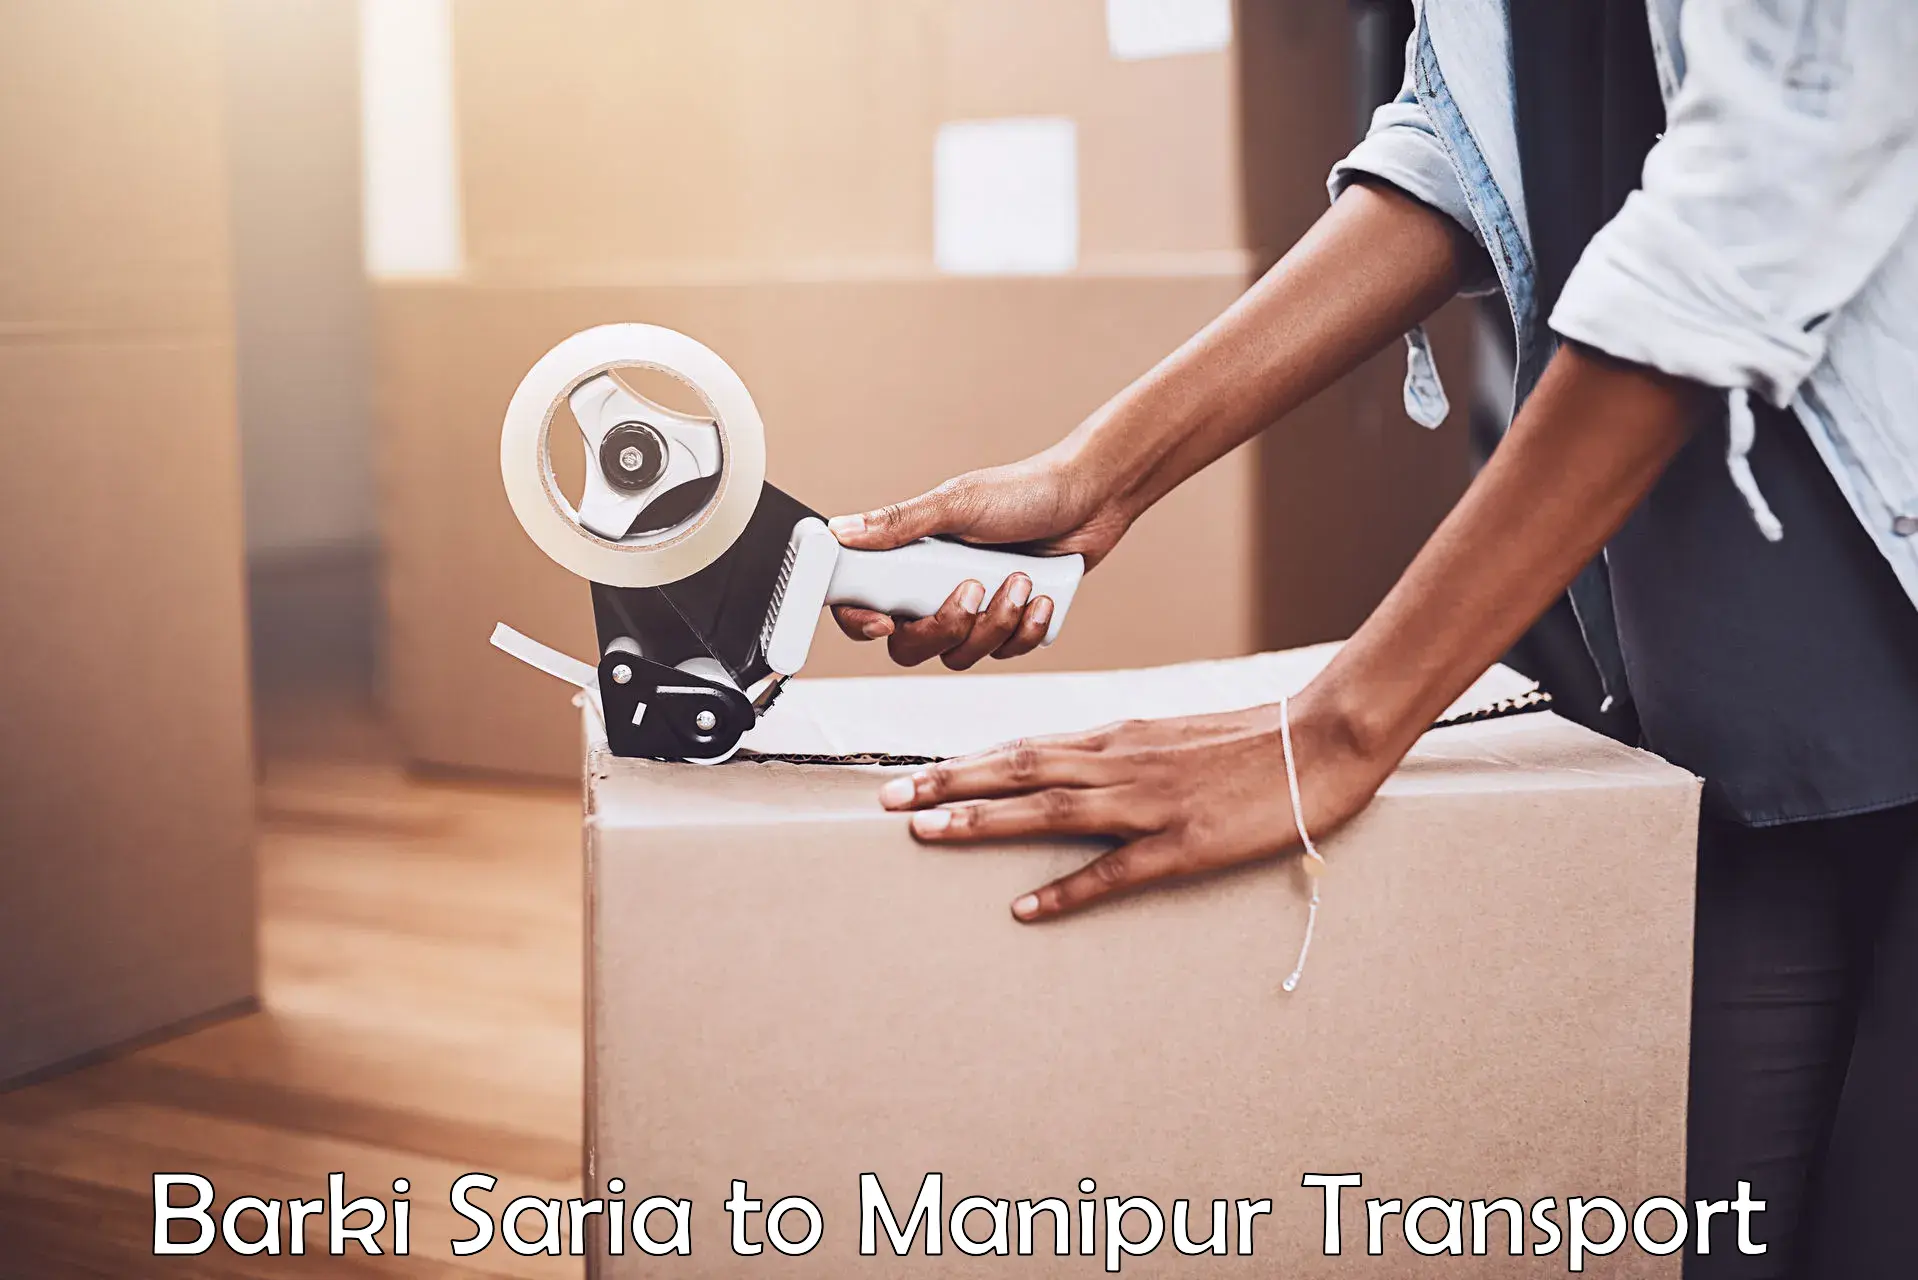 Online transport Barki Saria to Manipur